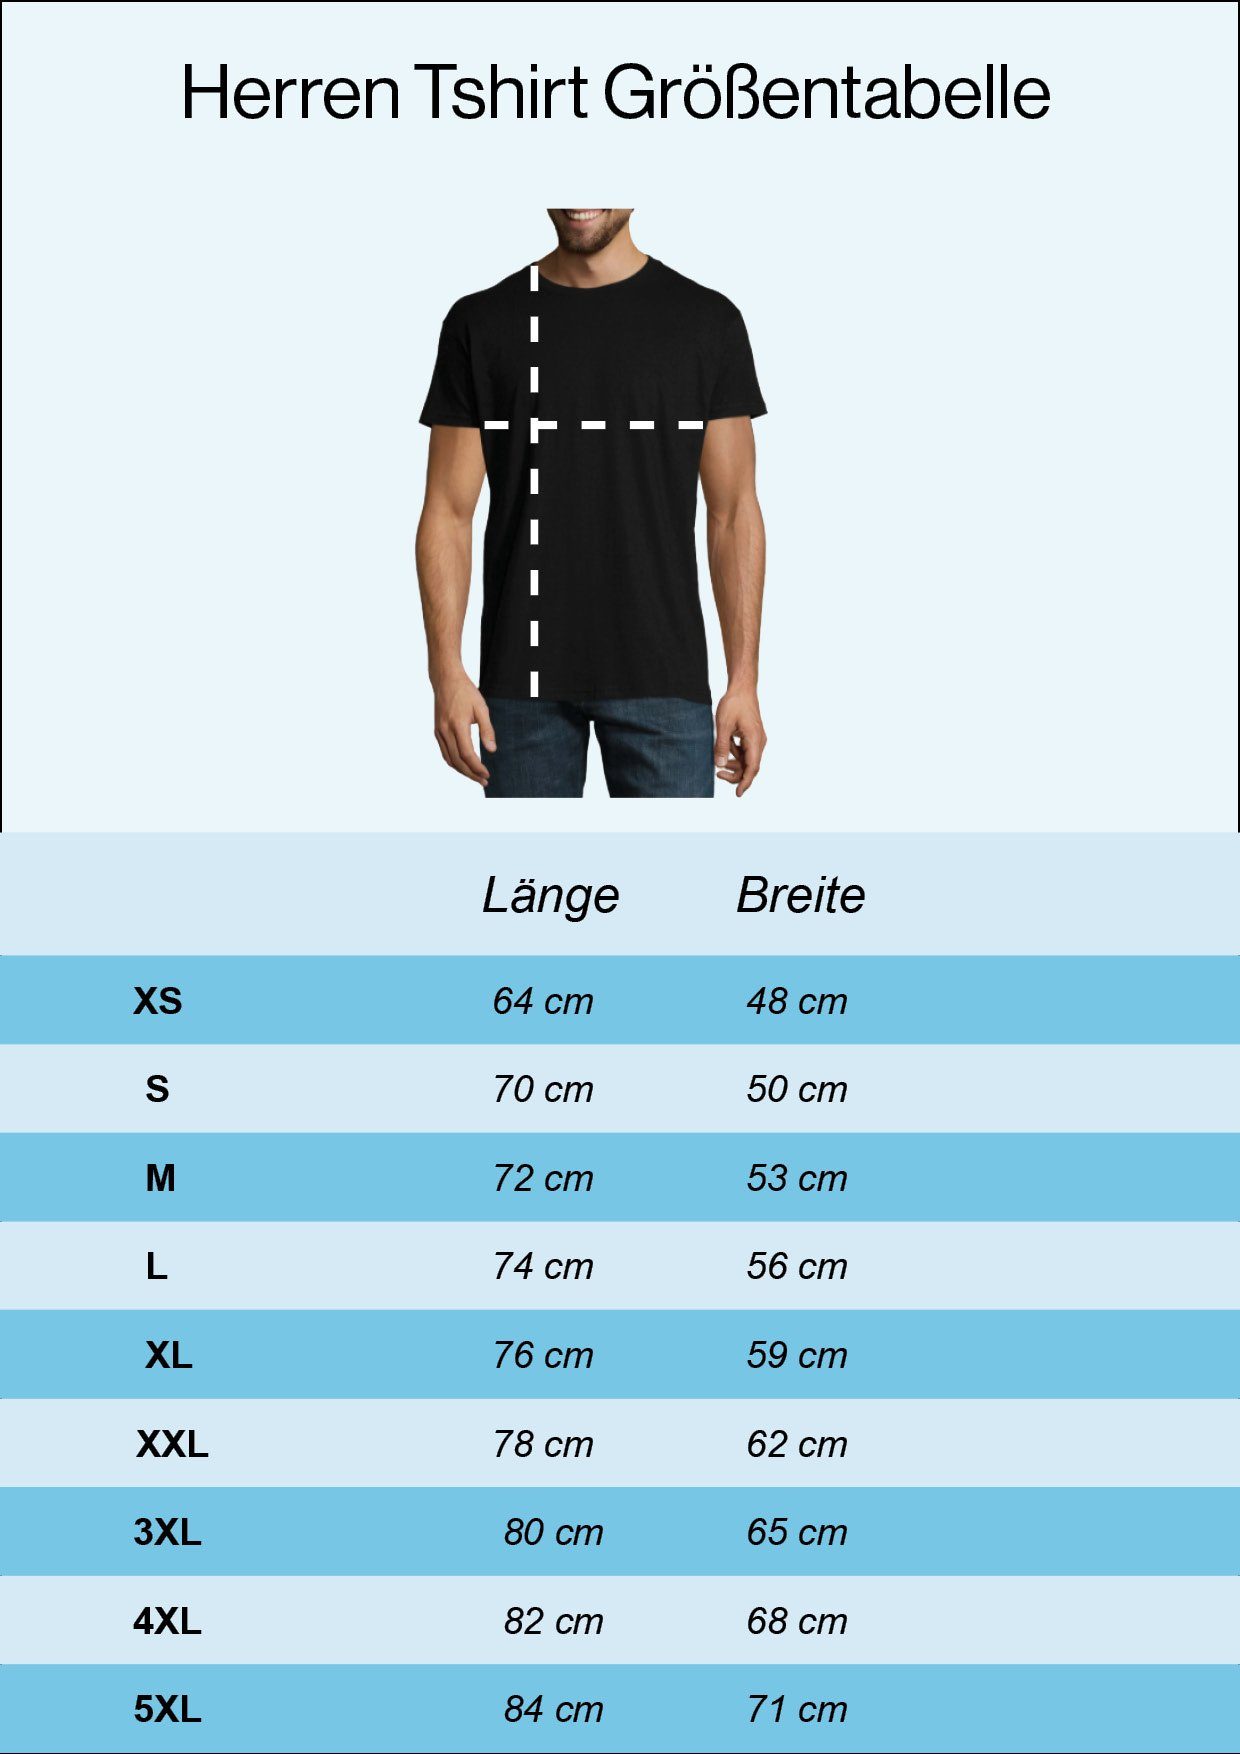 mehr T-Shirt heute Schwarz Designz es Produktiver nicht mit Frontprint wird Shirt Youth lustigem Atme, Herren Ich